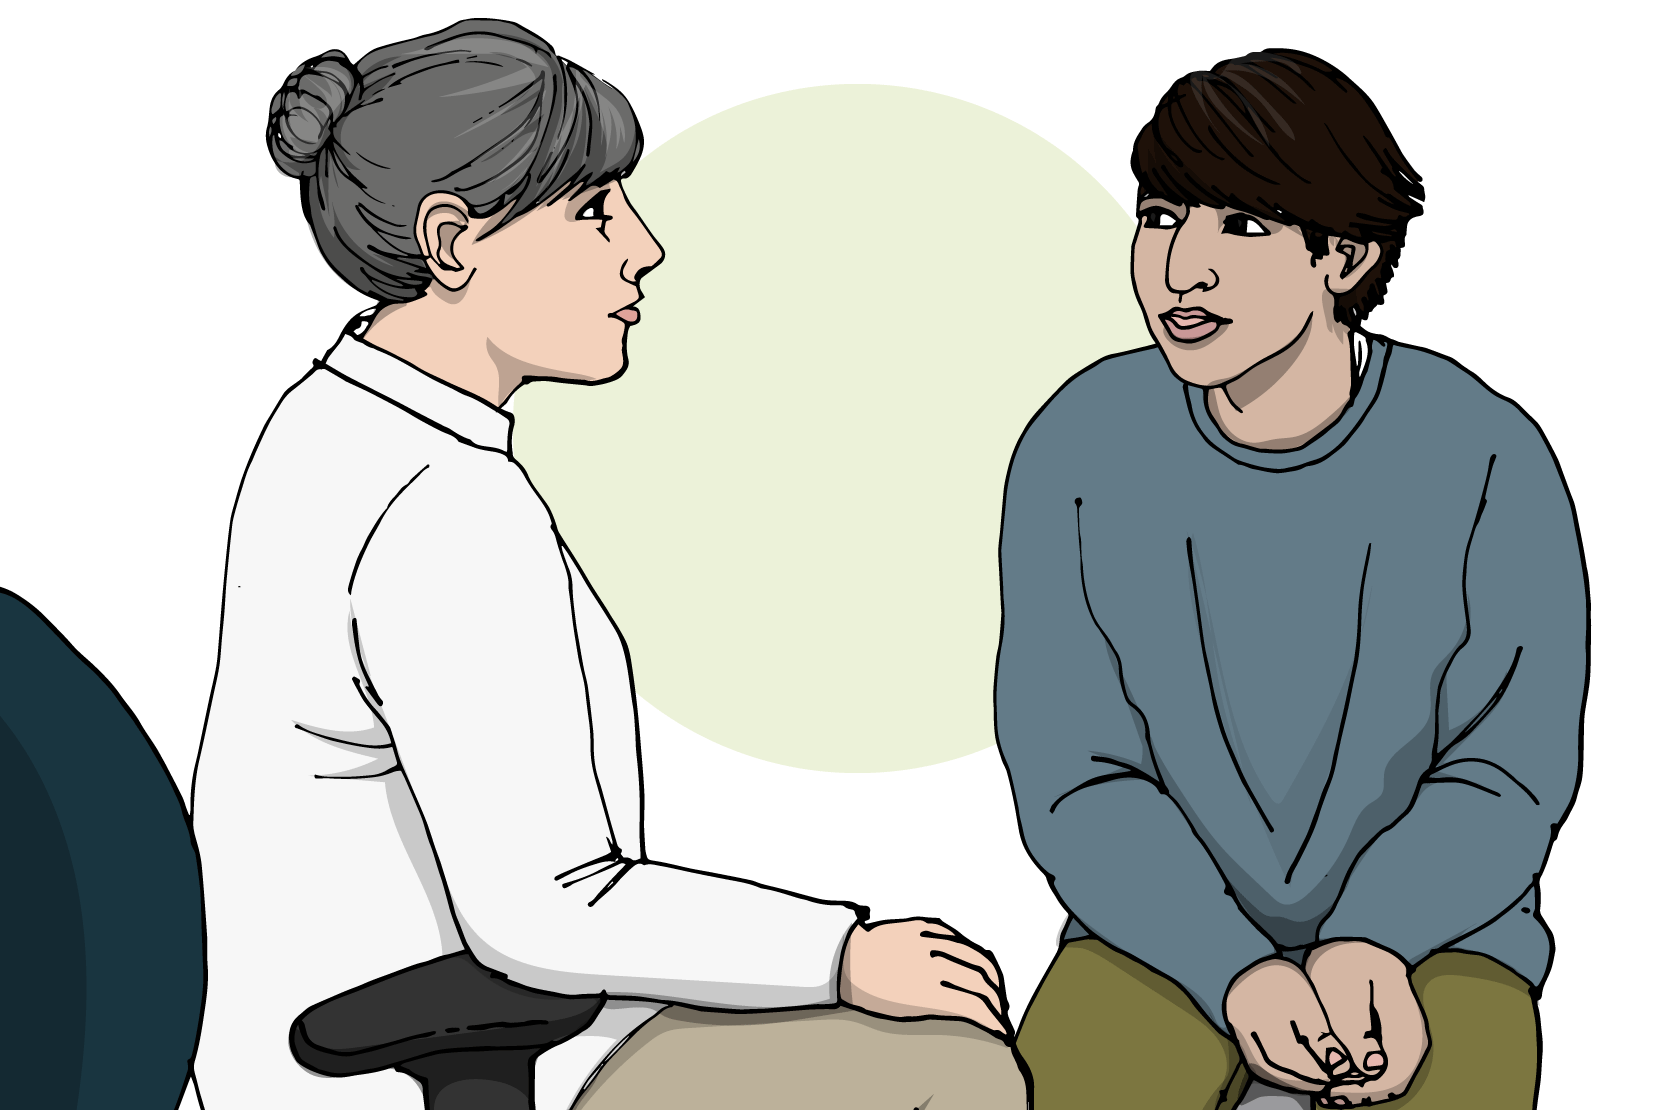 En ung person sitter och samtalar med en äldre, vårdpersonal. Illustration.